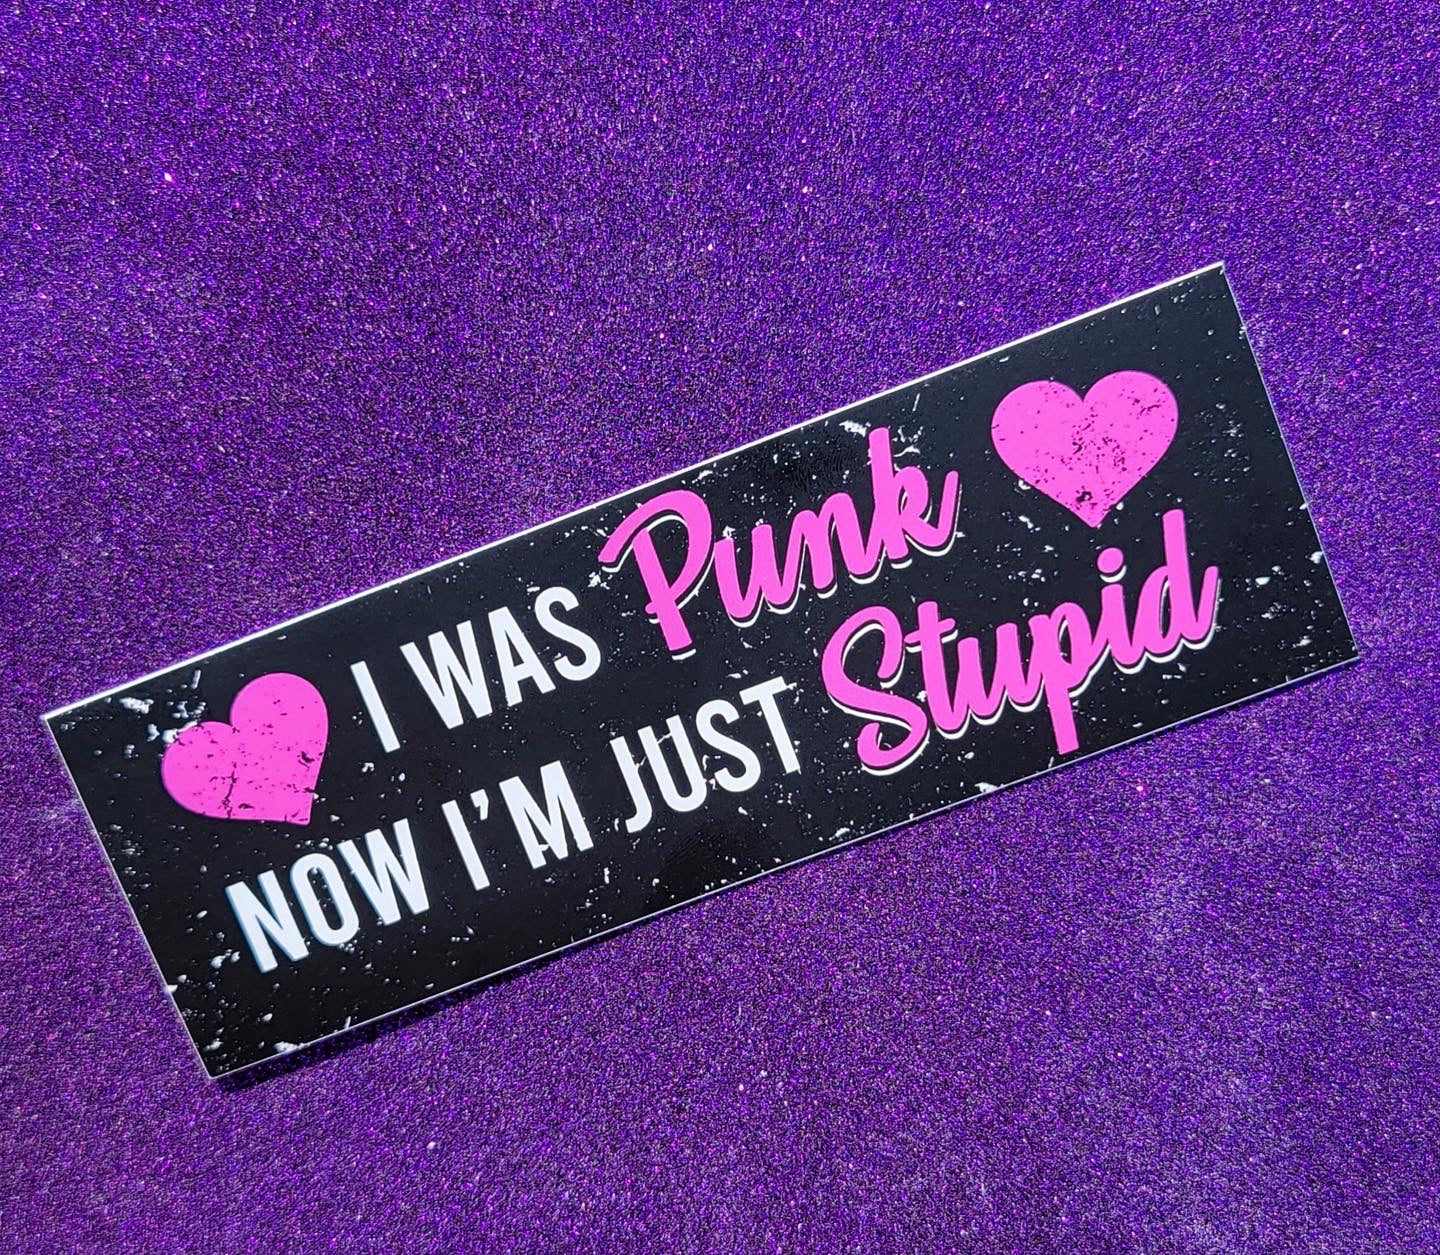 Stupid Punk Bumper Sticker 6"x2"